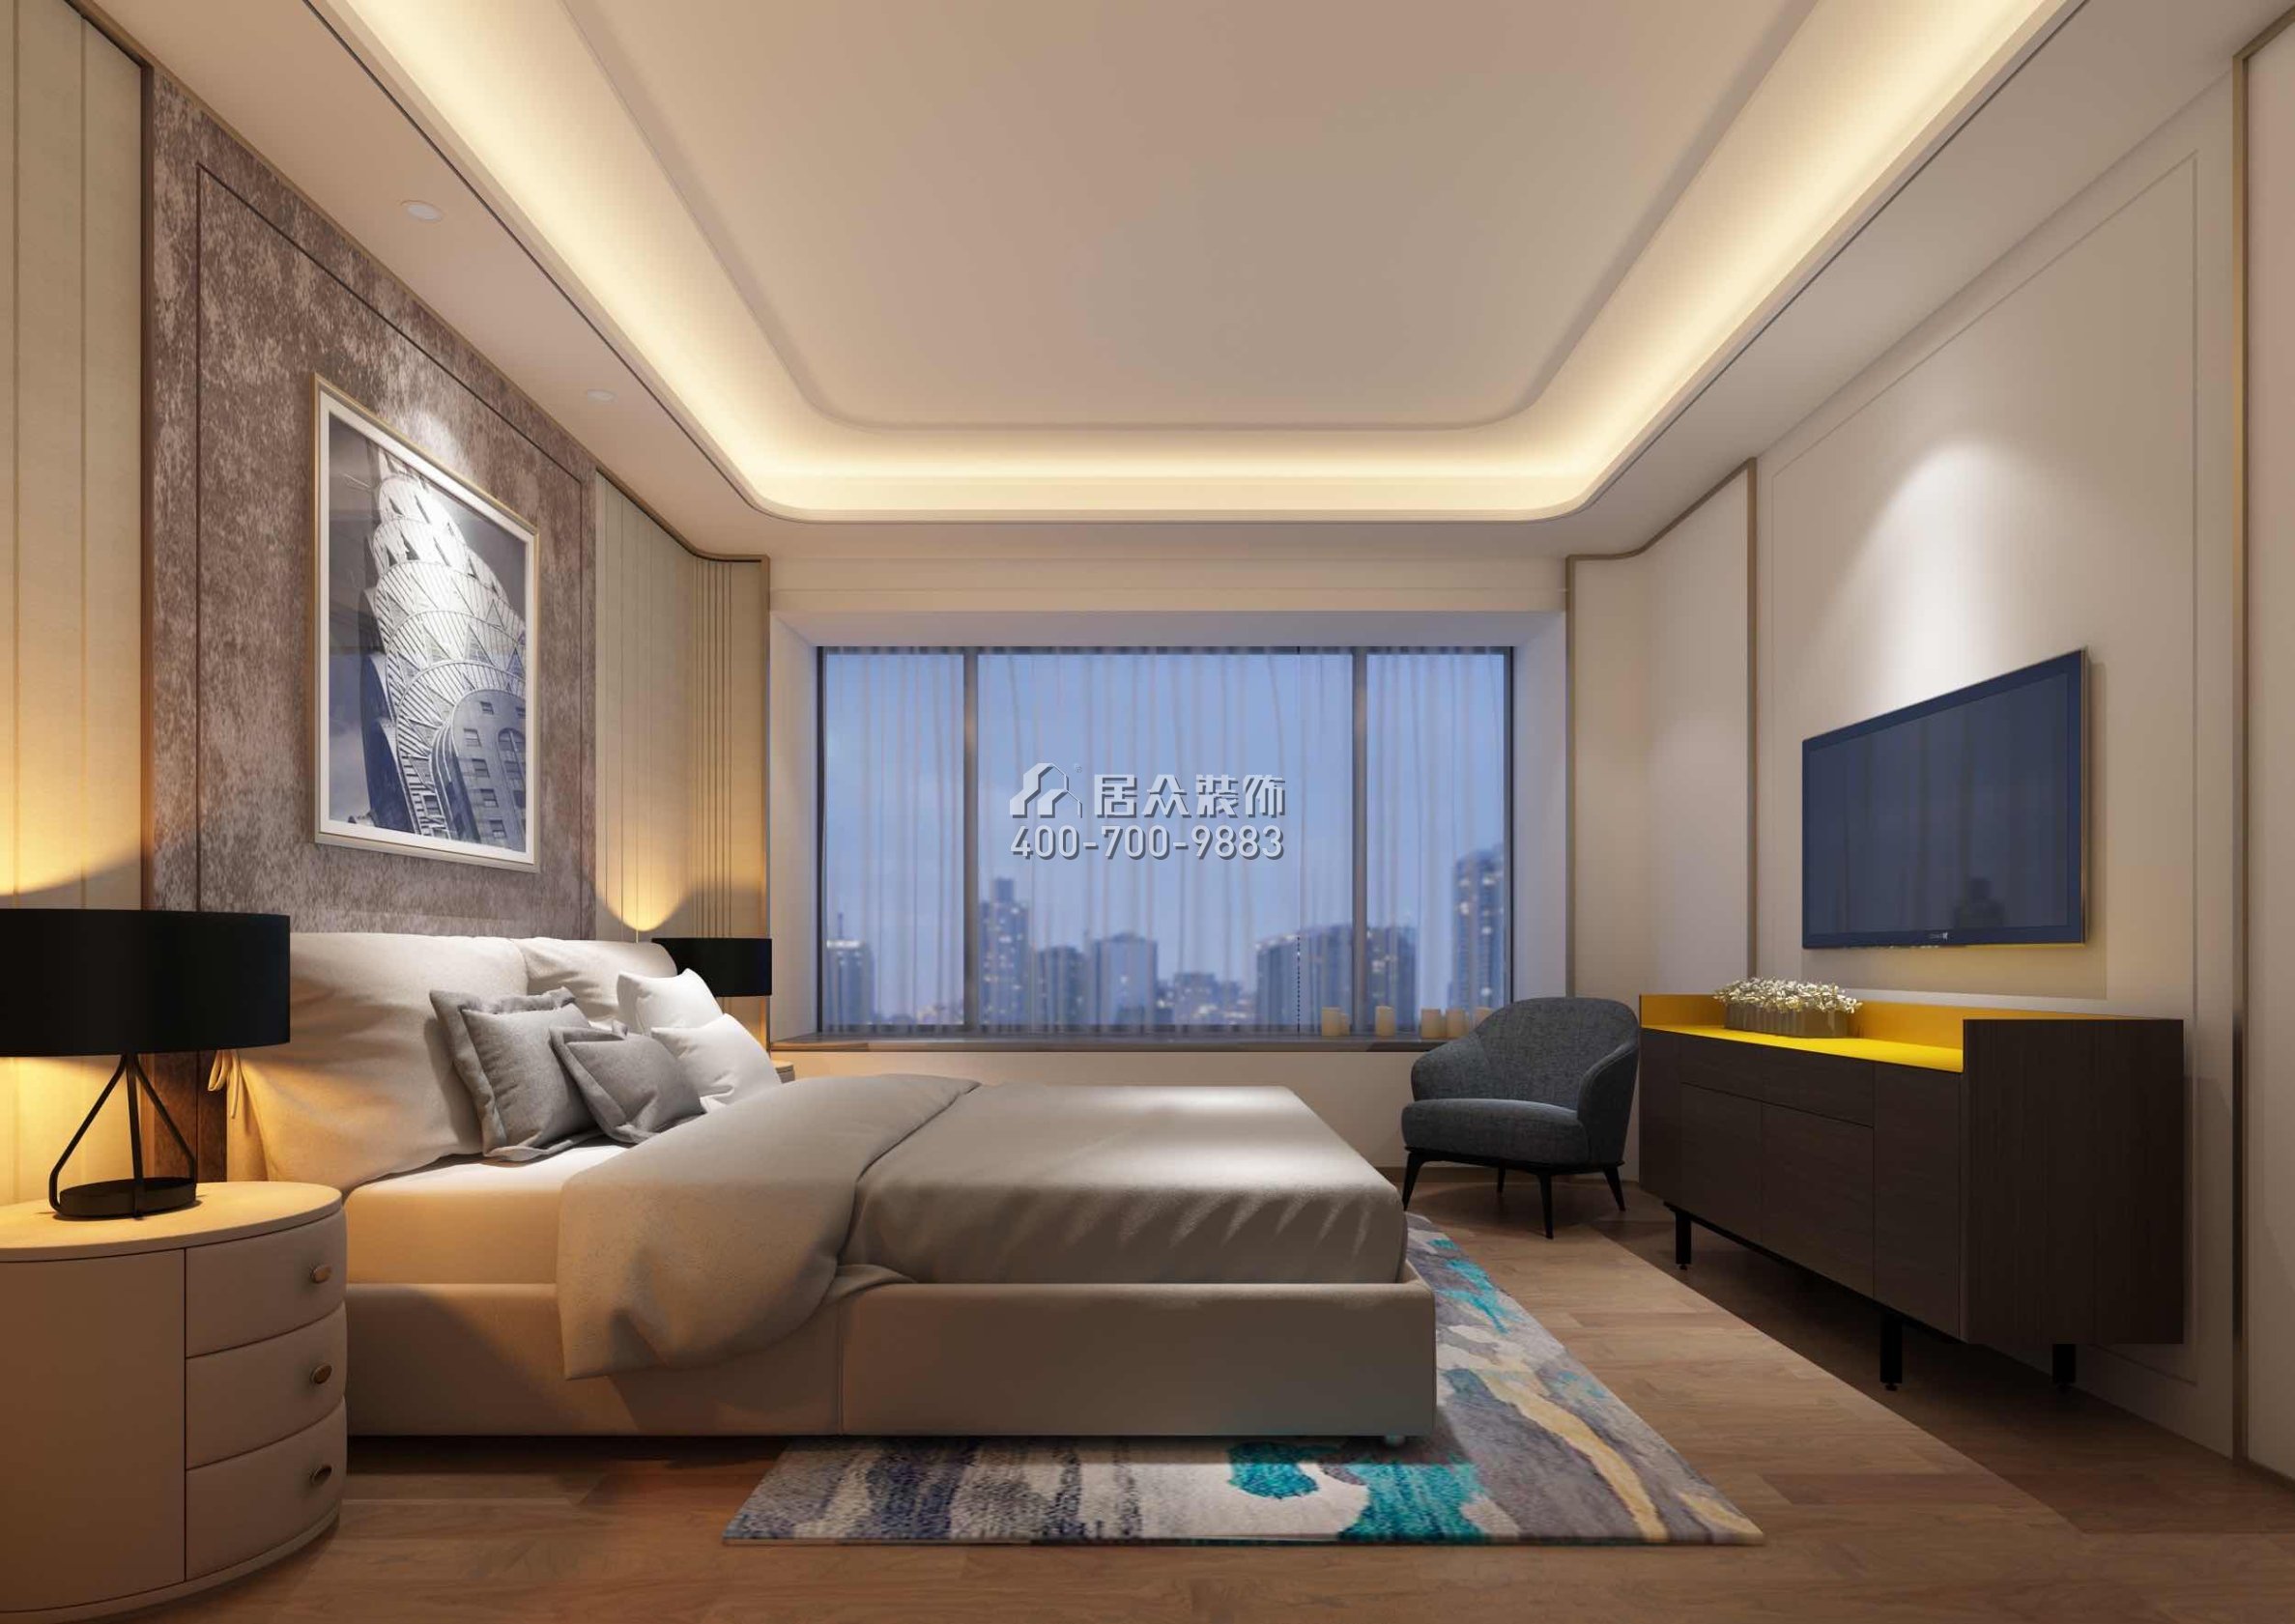 栖棠映山208平方米现代简约风格平层户型卧室装修效果图